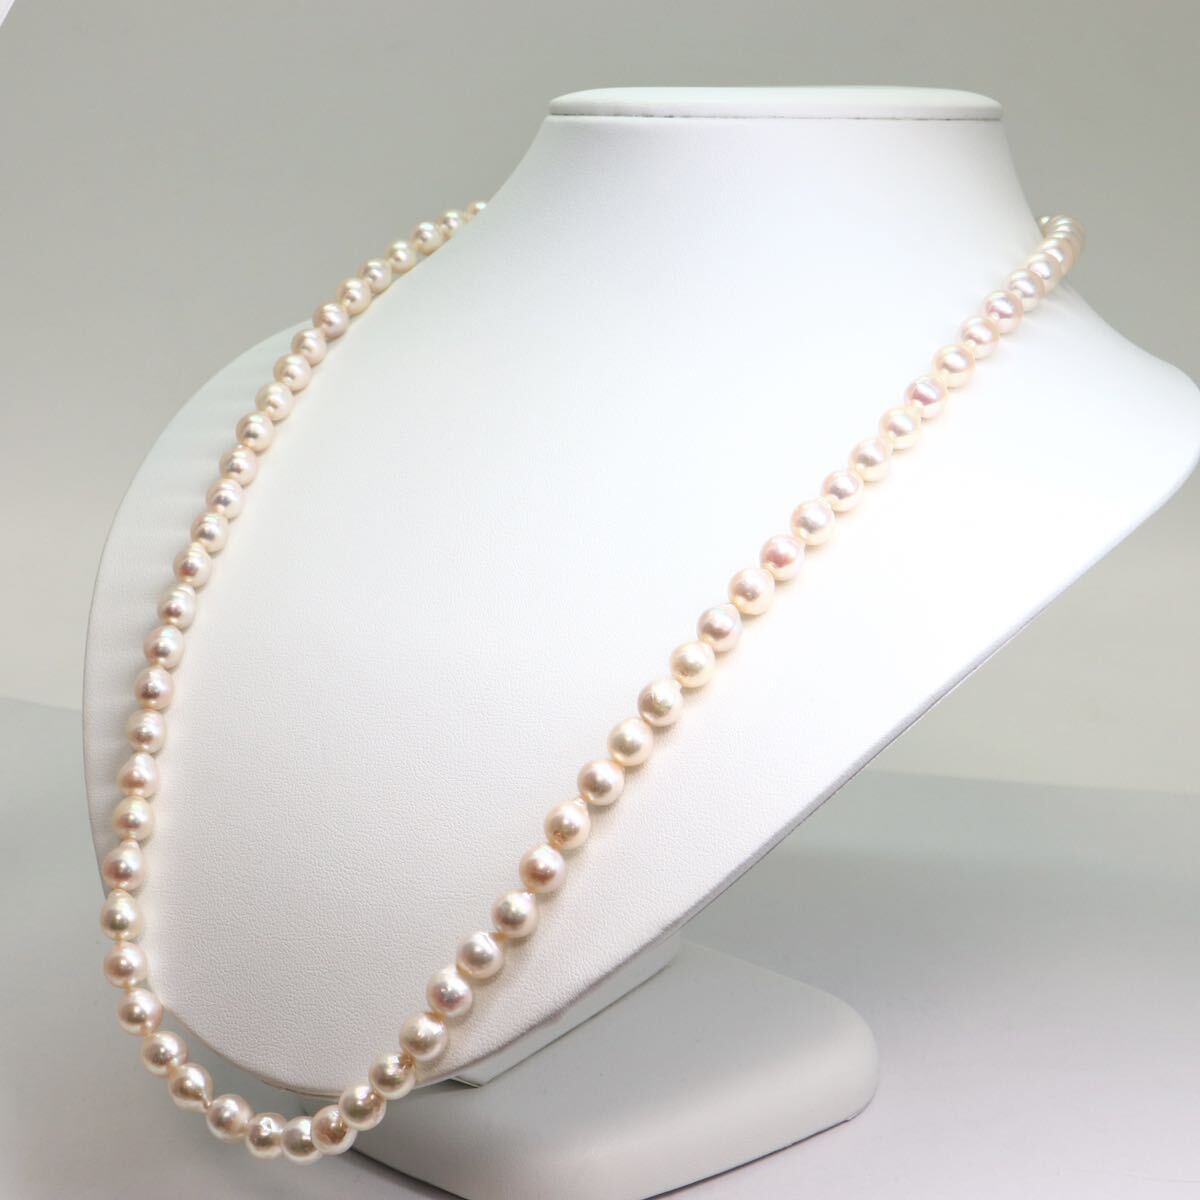 《アコヤ本真珠ネックレス》M 約7.0-7.5mm珠 41.6g 約62cm pearl necklace ジュエリー jewelry DC0/DE0_画像3